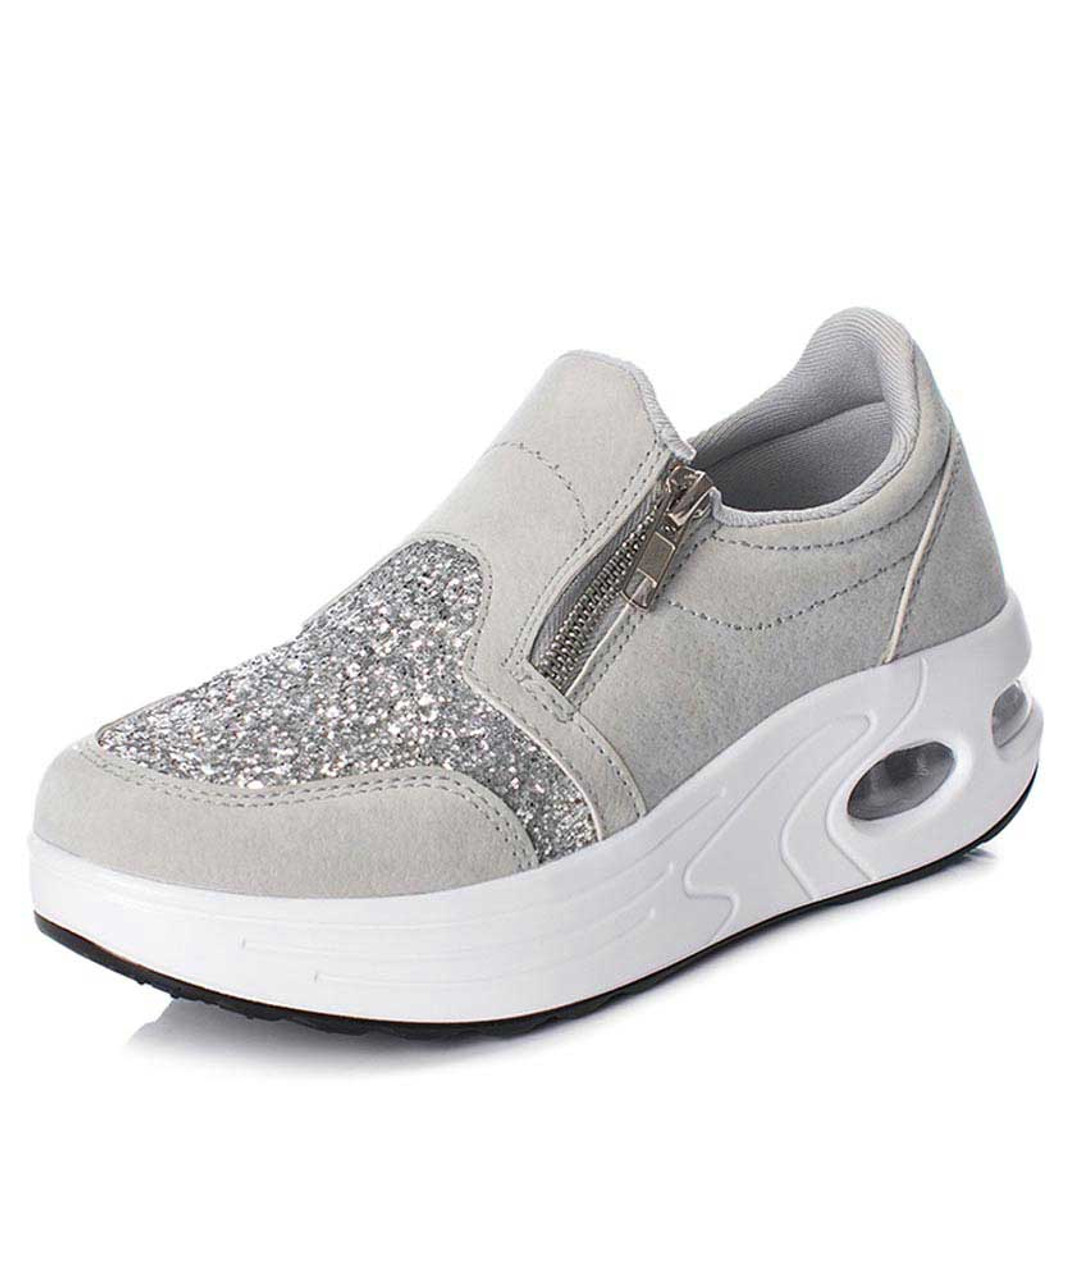 women's gray slip on shoes